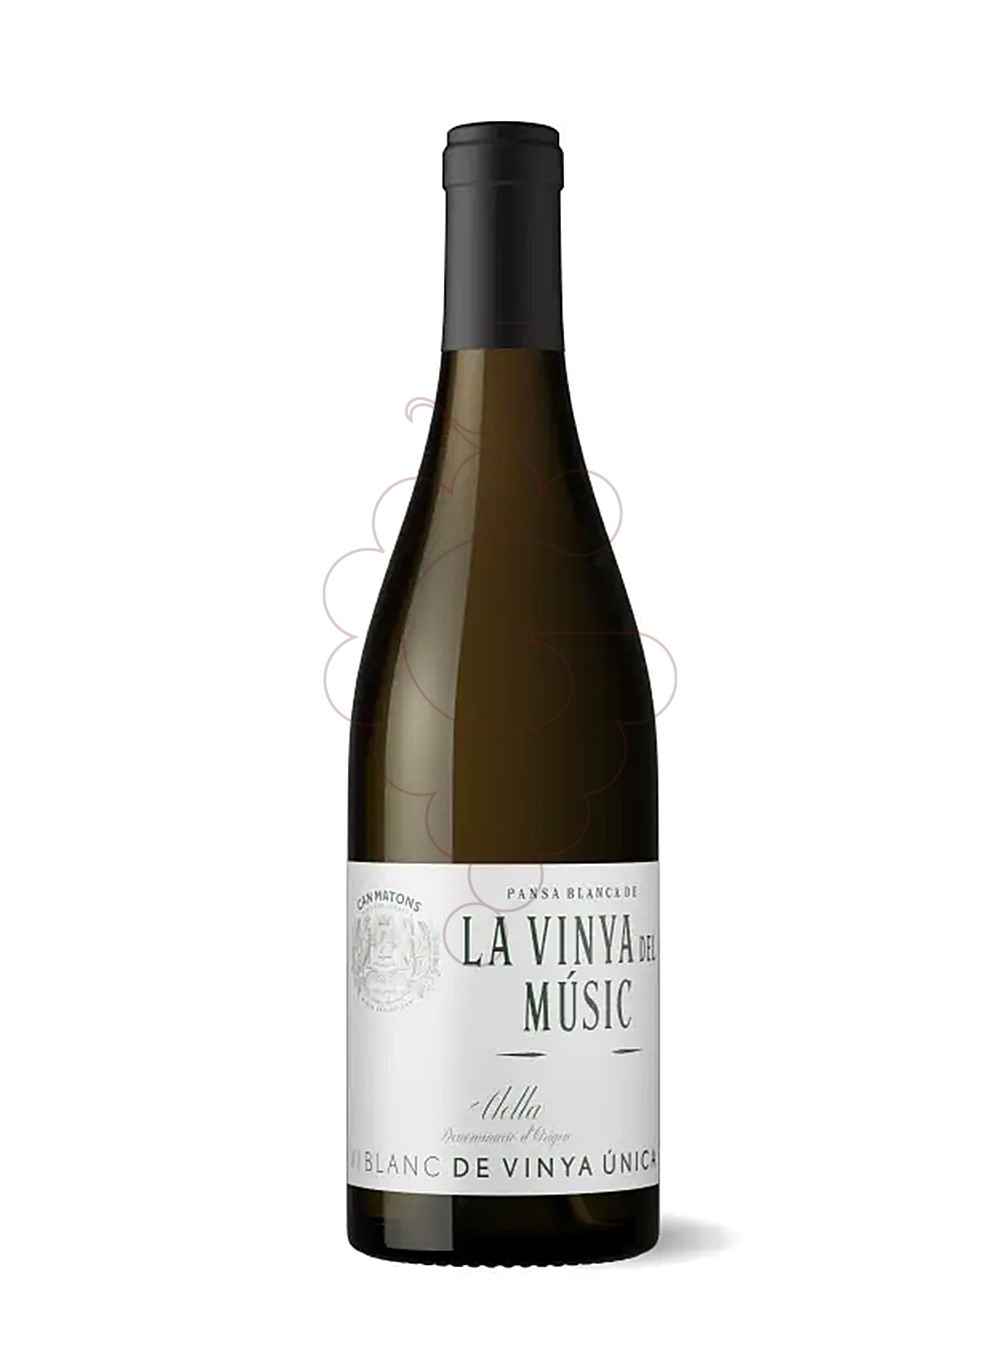 Photo La vinya del music bl 2019 white wine